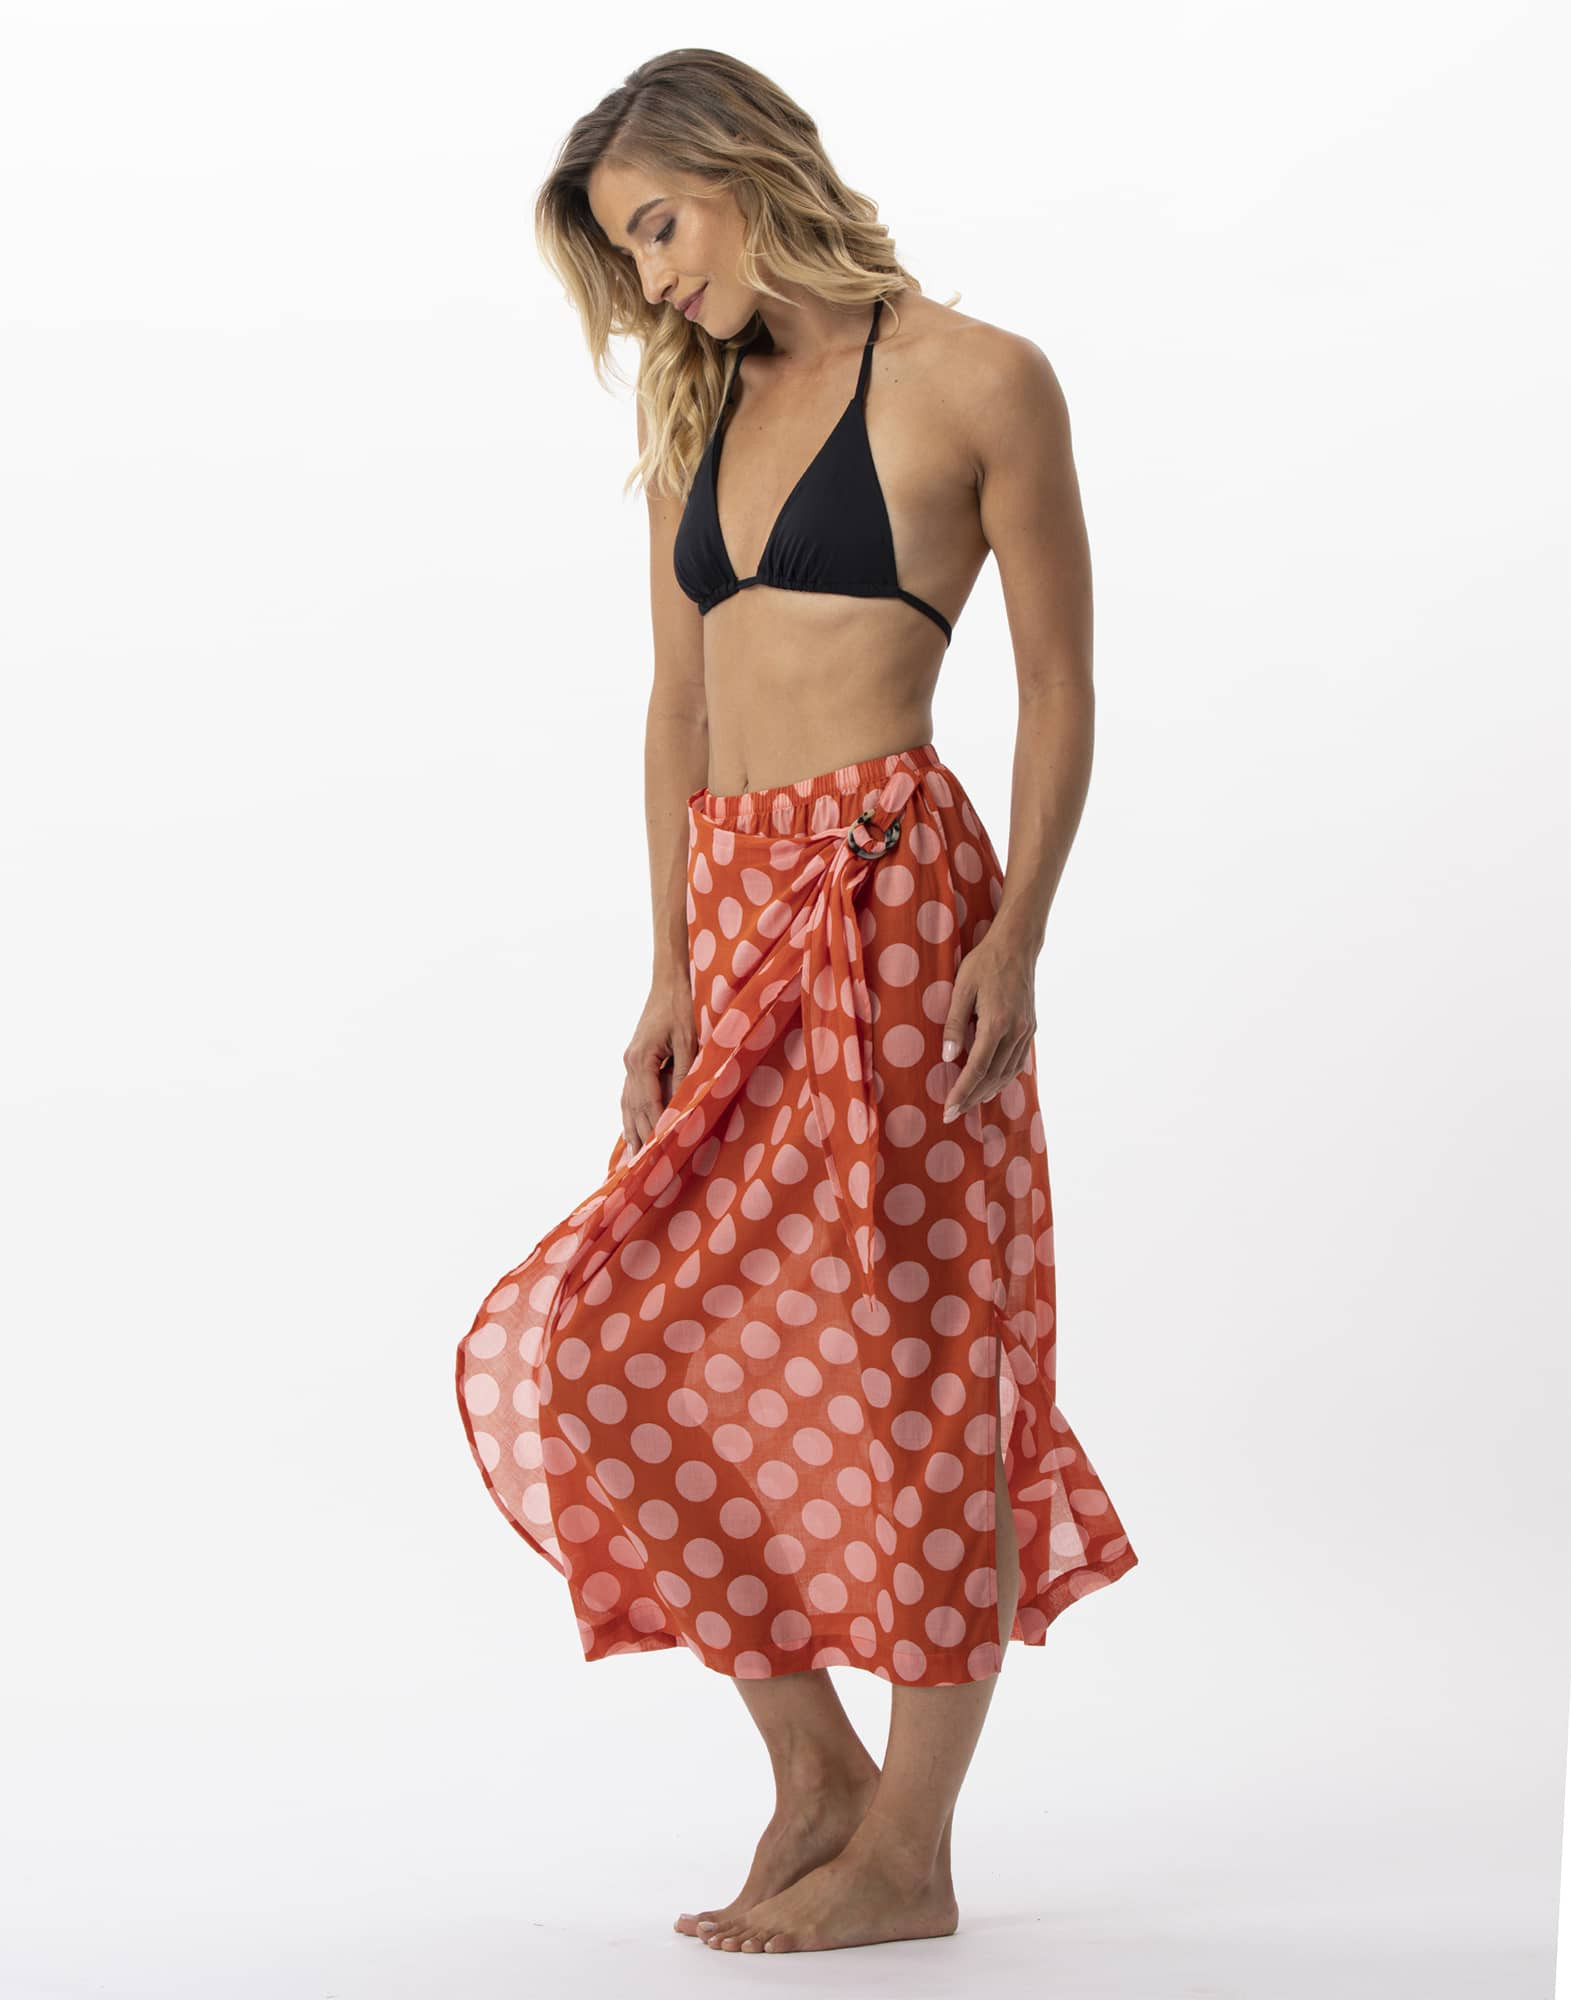 Polka dot printed sarong skirt in 100% cotton RIVA 780 pink